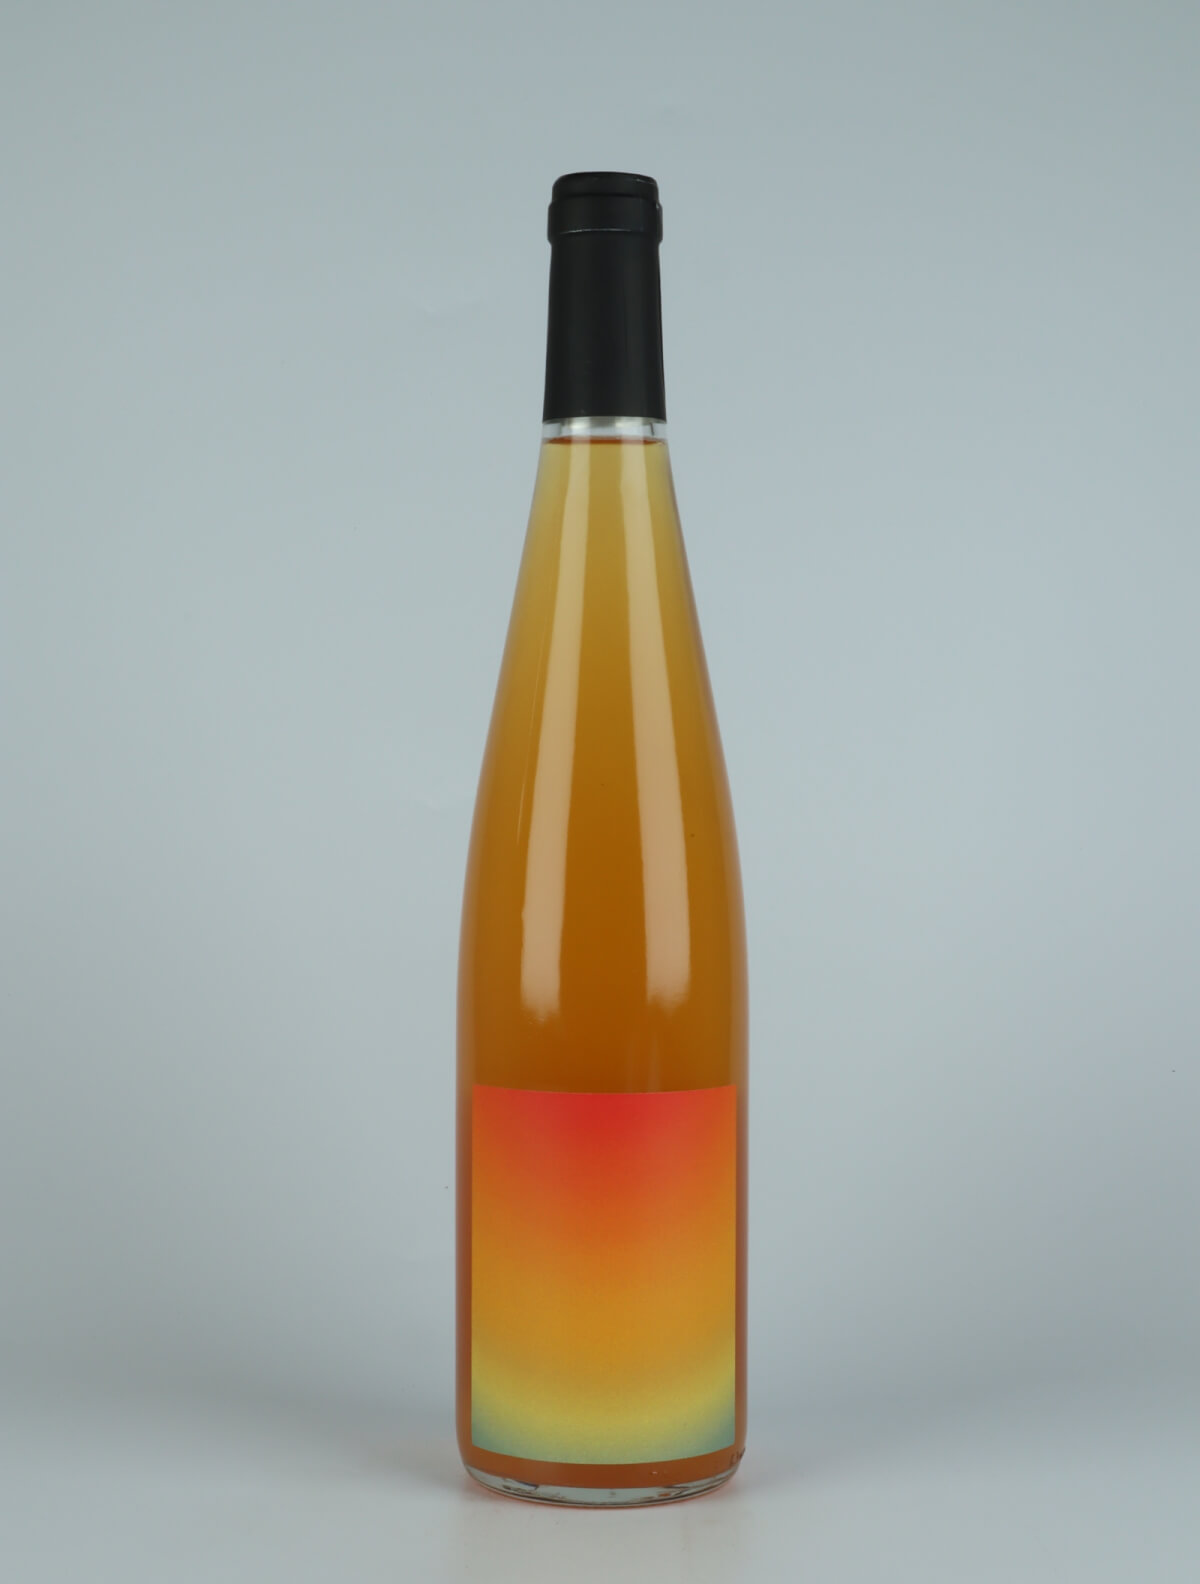 En flaske 2021 Frénétique Orange vin fra Domaine Goepp, Alsace i Frankrig